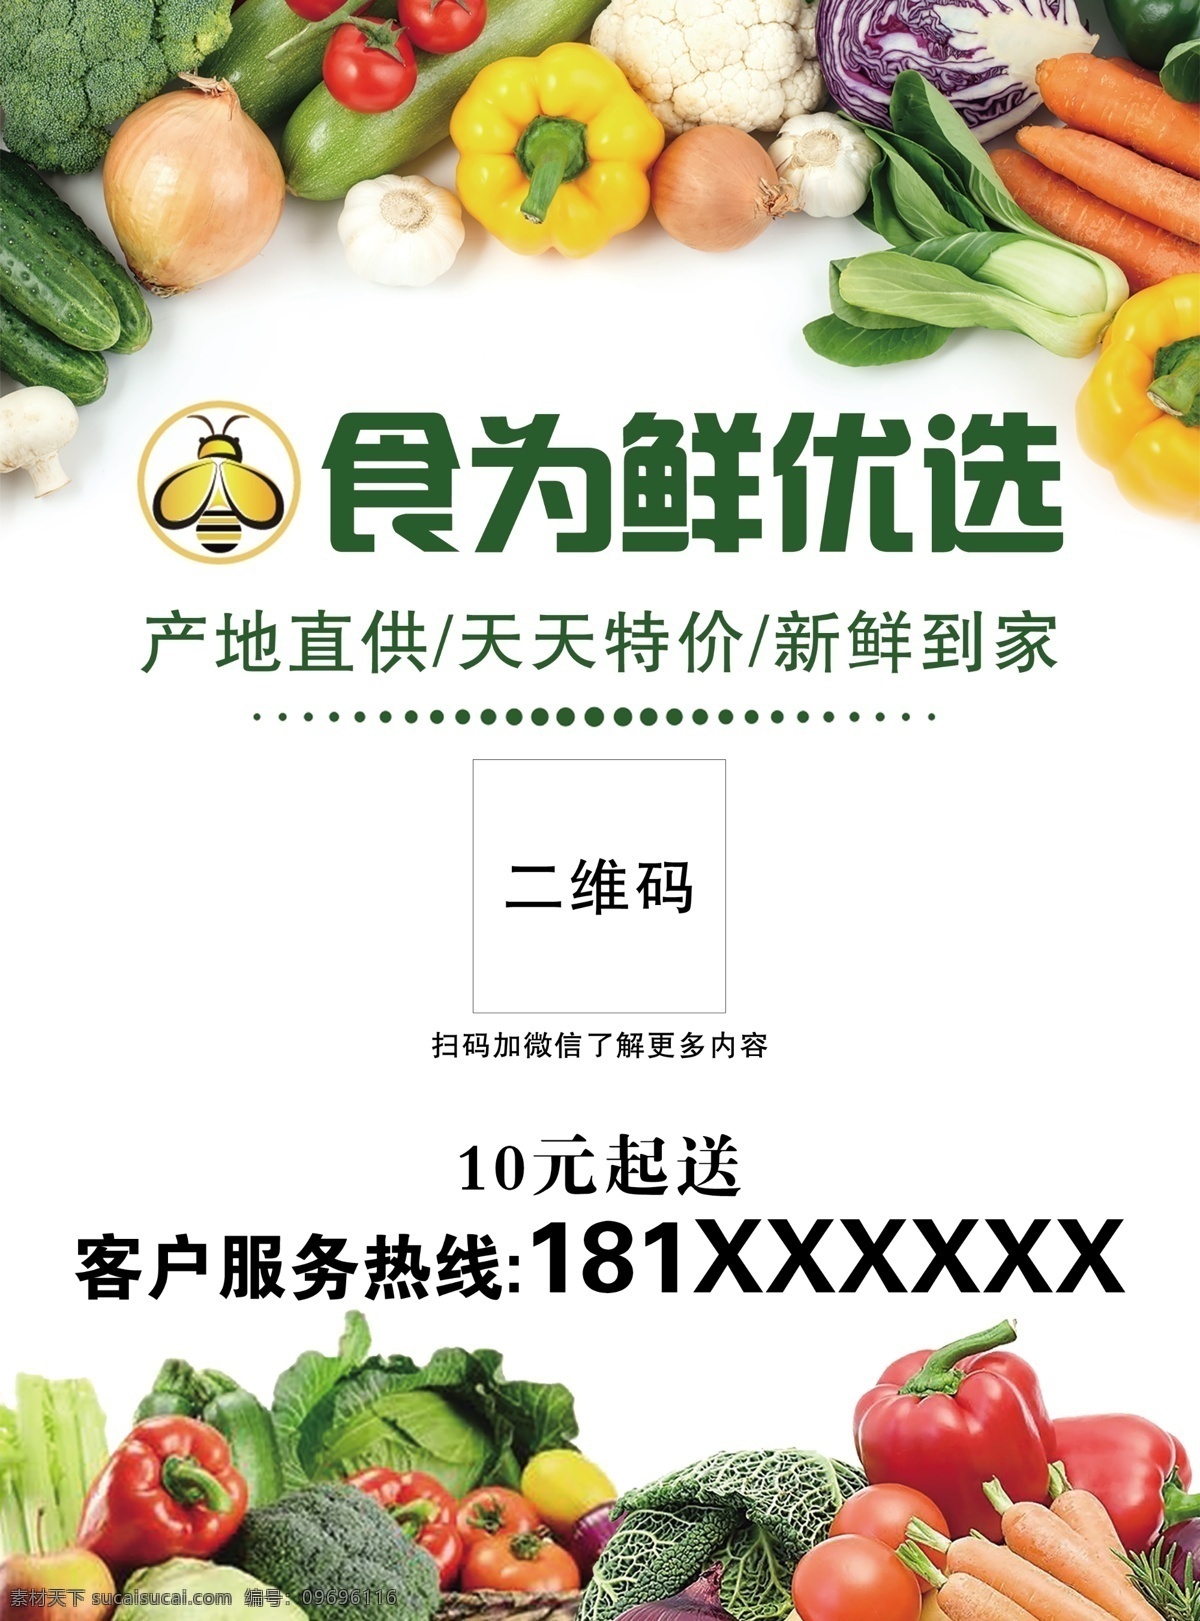 水果 蔬菜 宣传单 水果店 果蔬店 水果超市 水果宣传单 水果广告 蔬菜广告 新鲜果蔬 印刷品 dm宣传单